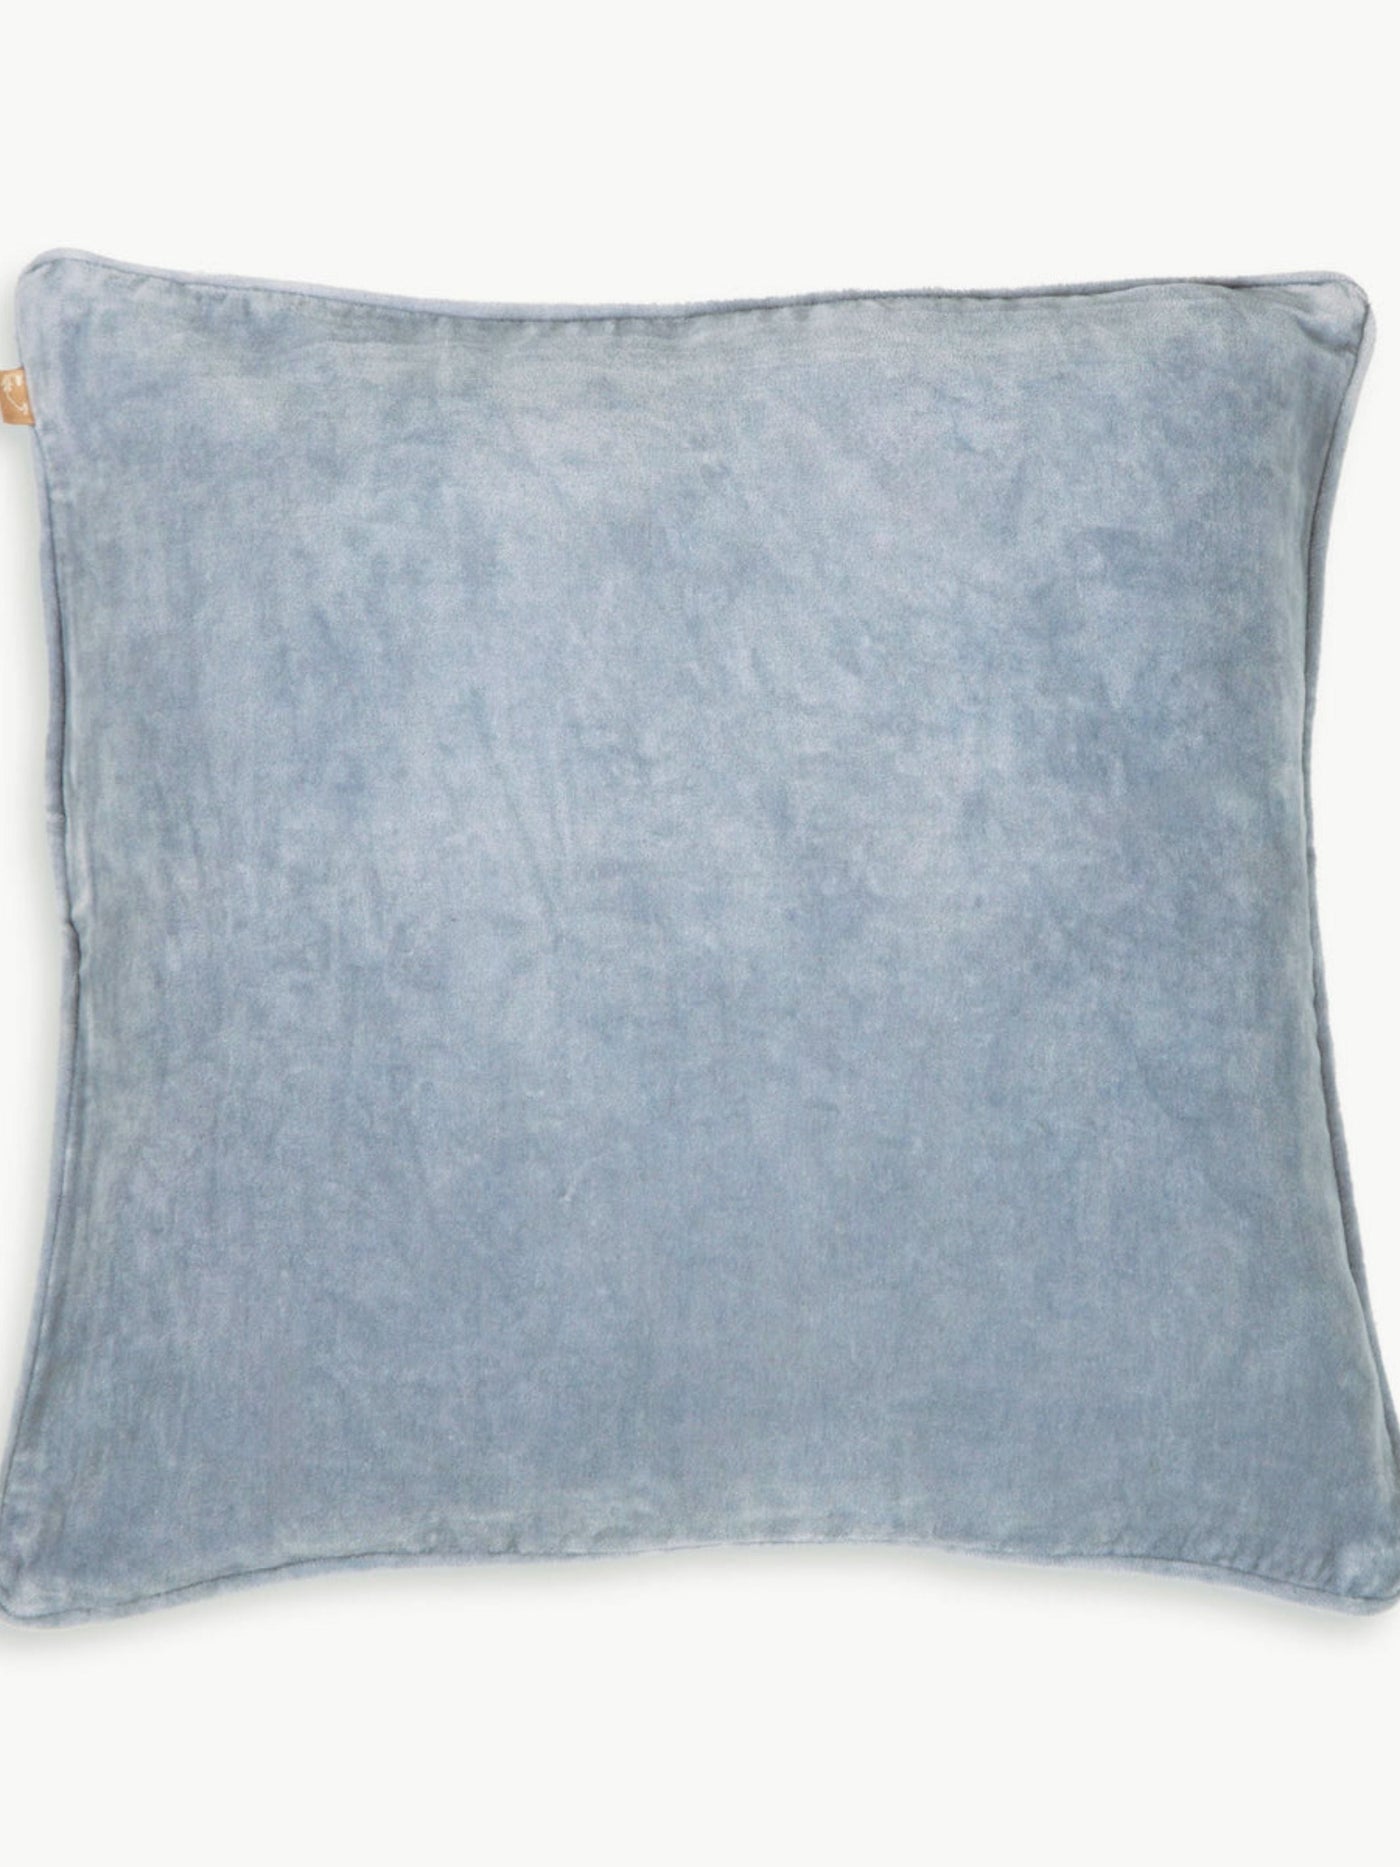 Baby Blue Velvet Cushion Cover